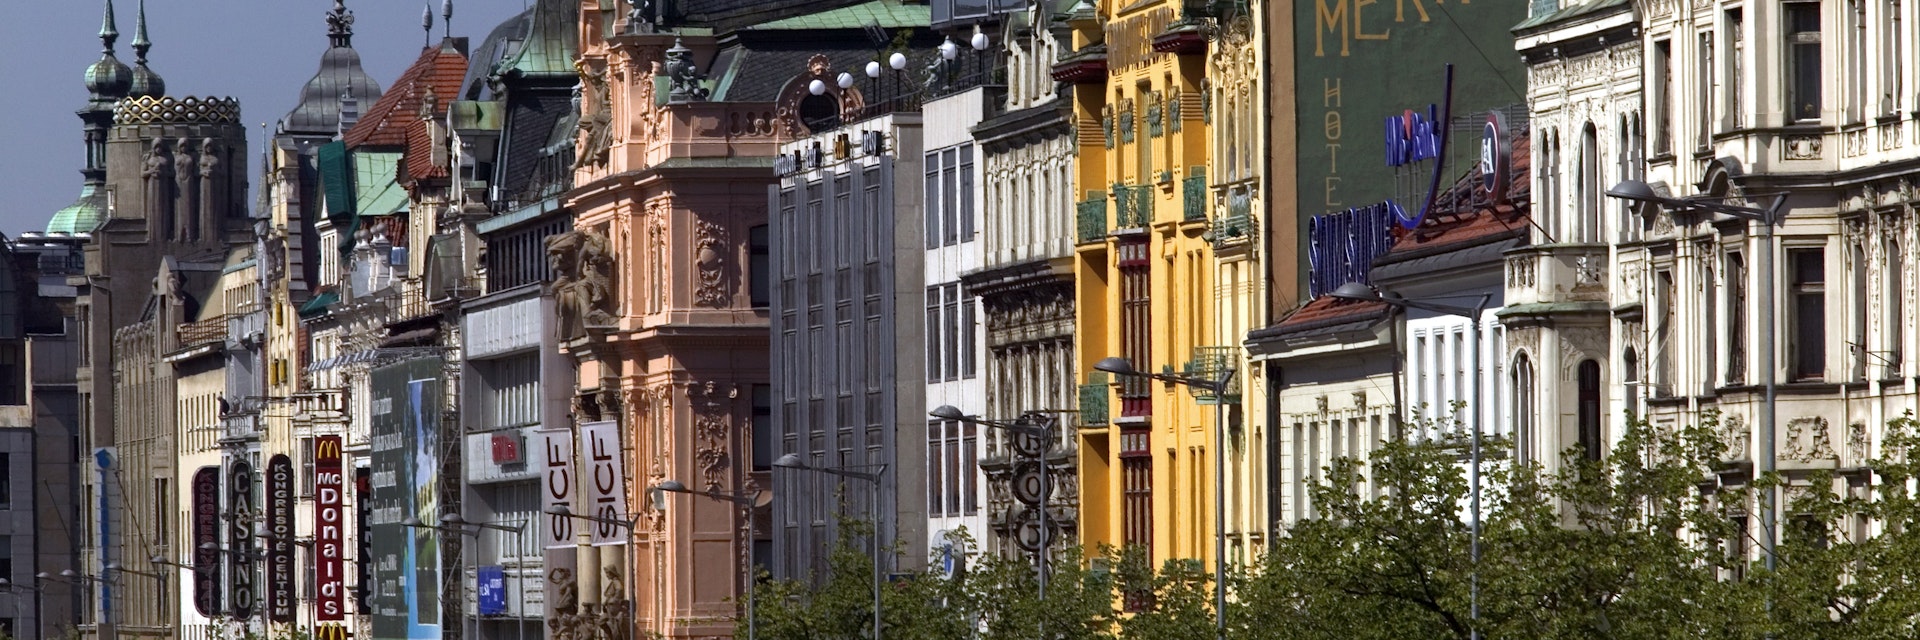 Baroque building facades, Wenceslas Square.